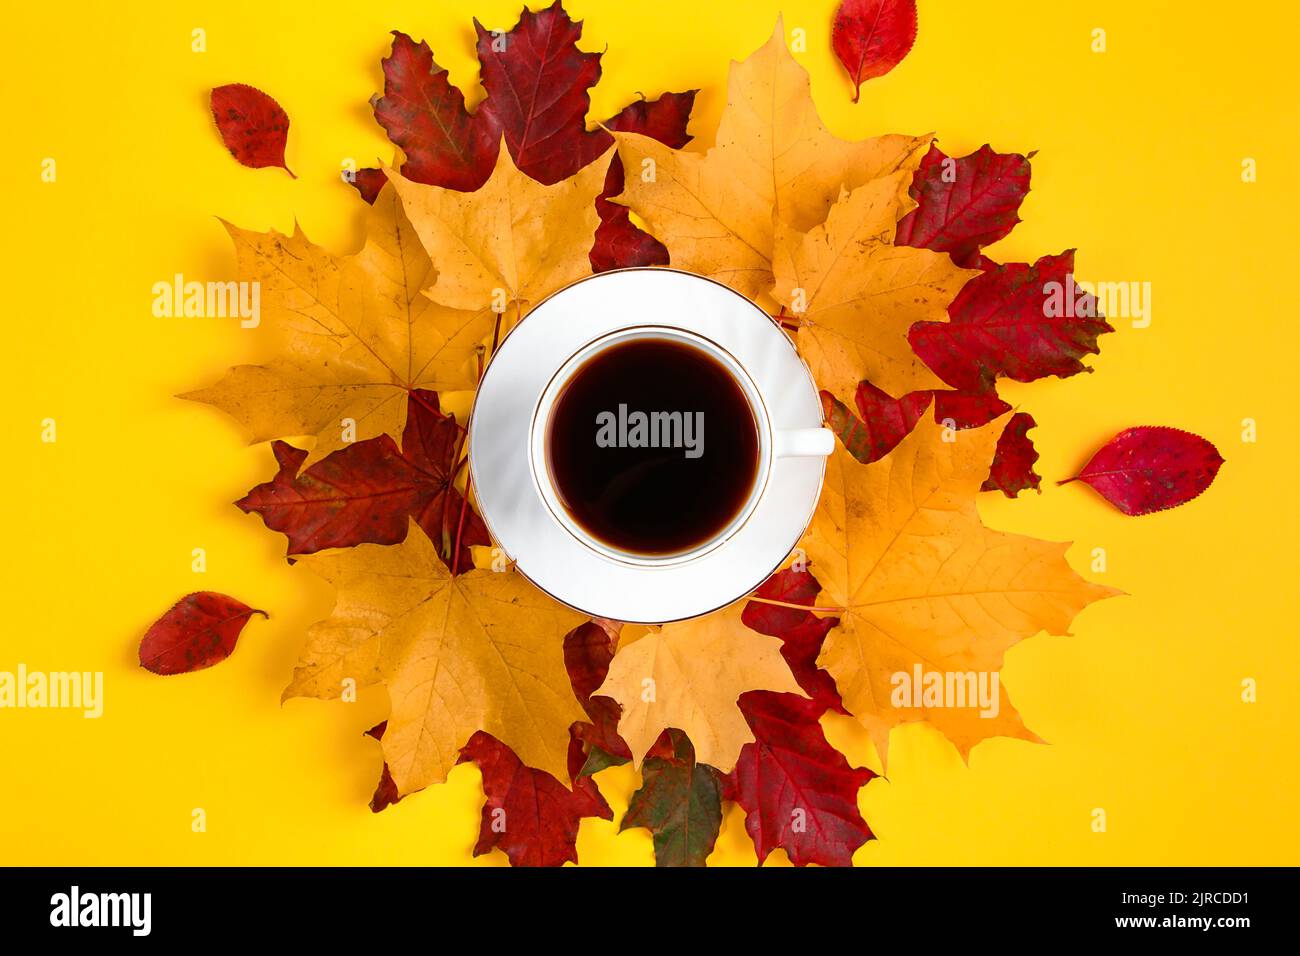 Tasse de café et feuilles mortes sur fond jaune vif. Concept Hello Autumn. Boisson chaude par temps froid. Banque D'Images